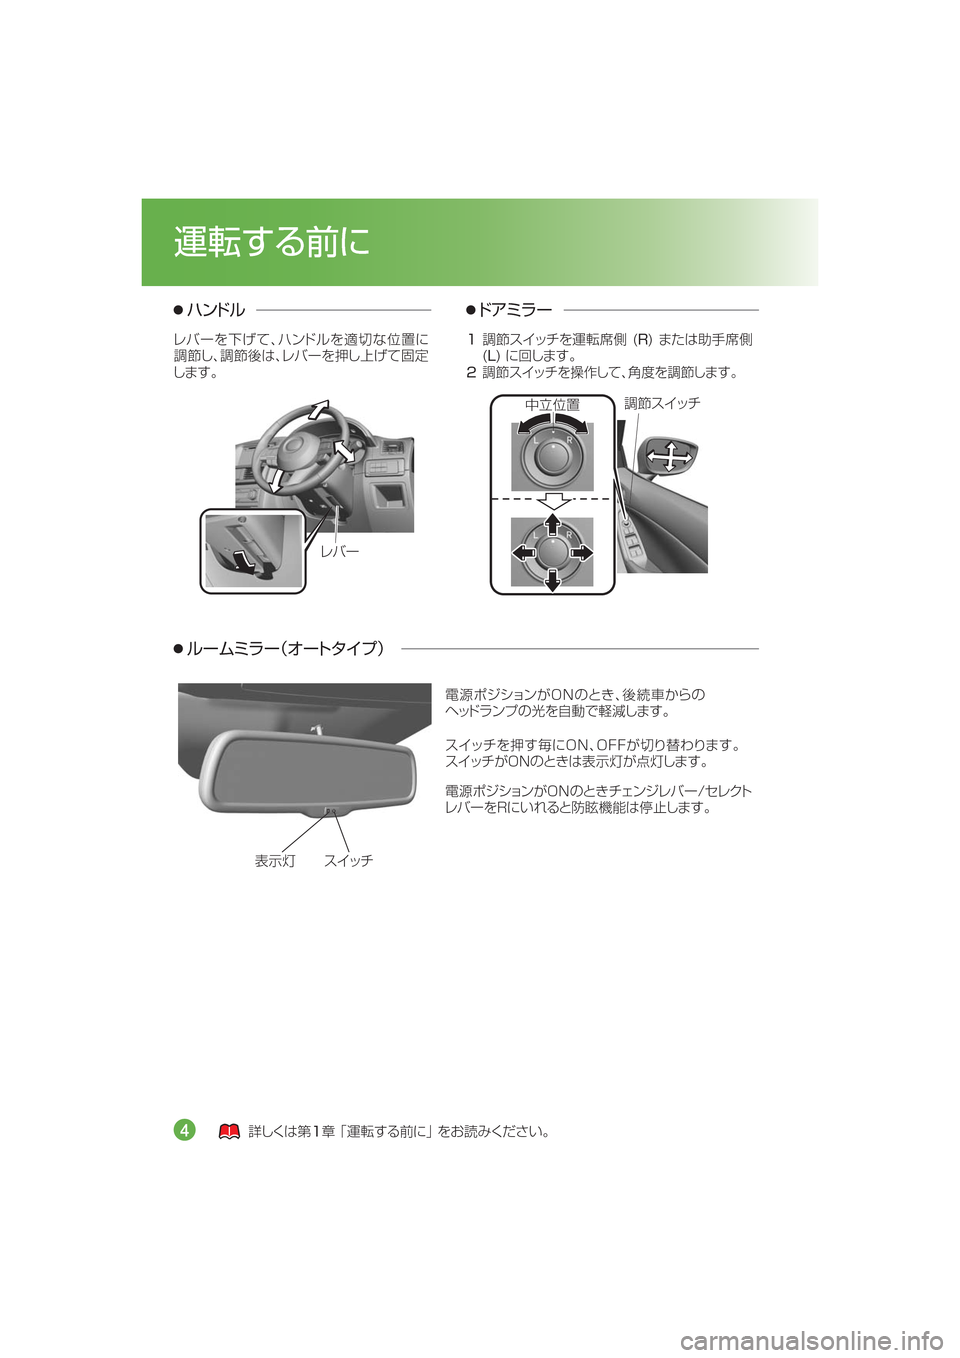 MAZDA MODEL CX-5 2015  取扱説明書 (in Japanese) 
¯Ôn µ ¿½
èÌ”
¤qÐ
…µ ¿½
ËïÅç
